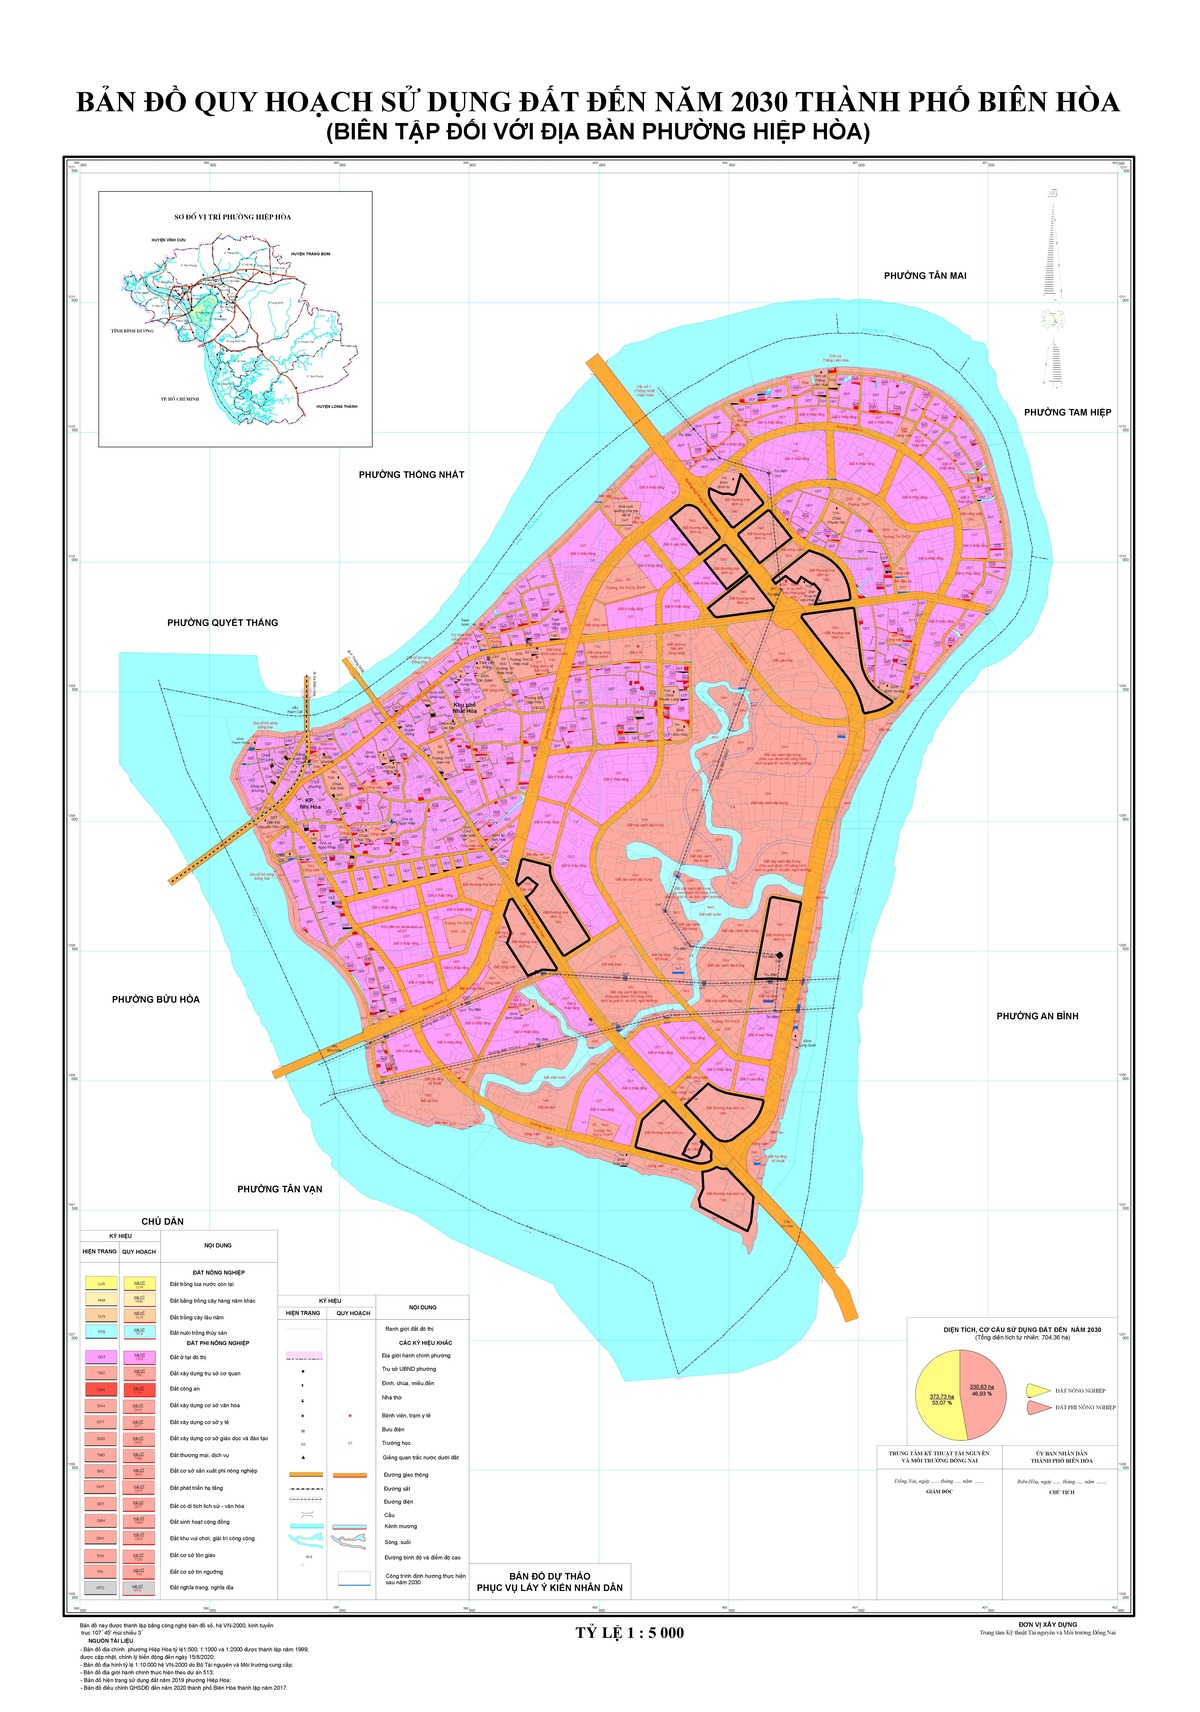 Bản đồ quy hoạch phường Hiệp Hòa, thành phố Biên Hòa, tỉnh Đồng Nai đến năm 2030